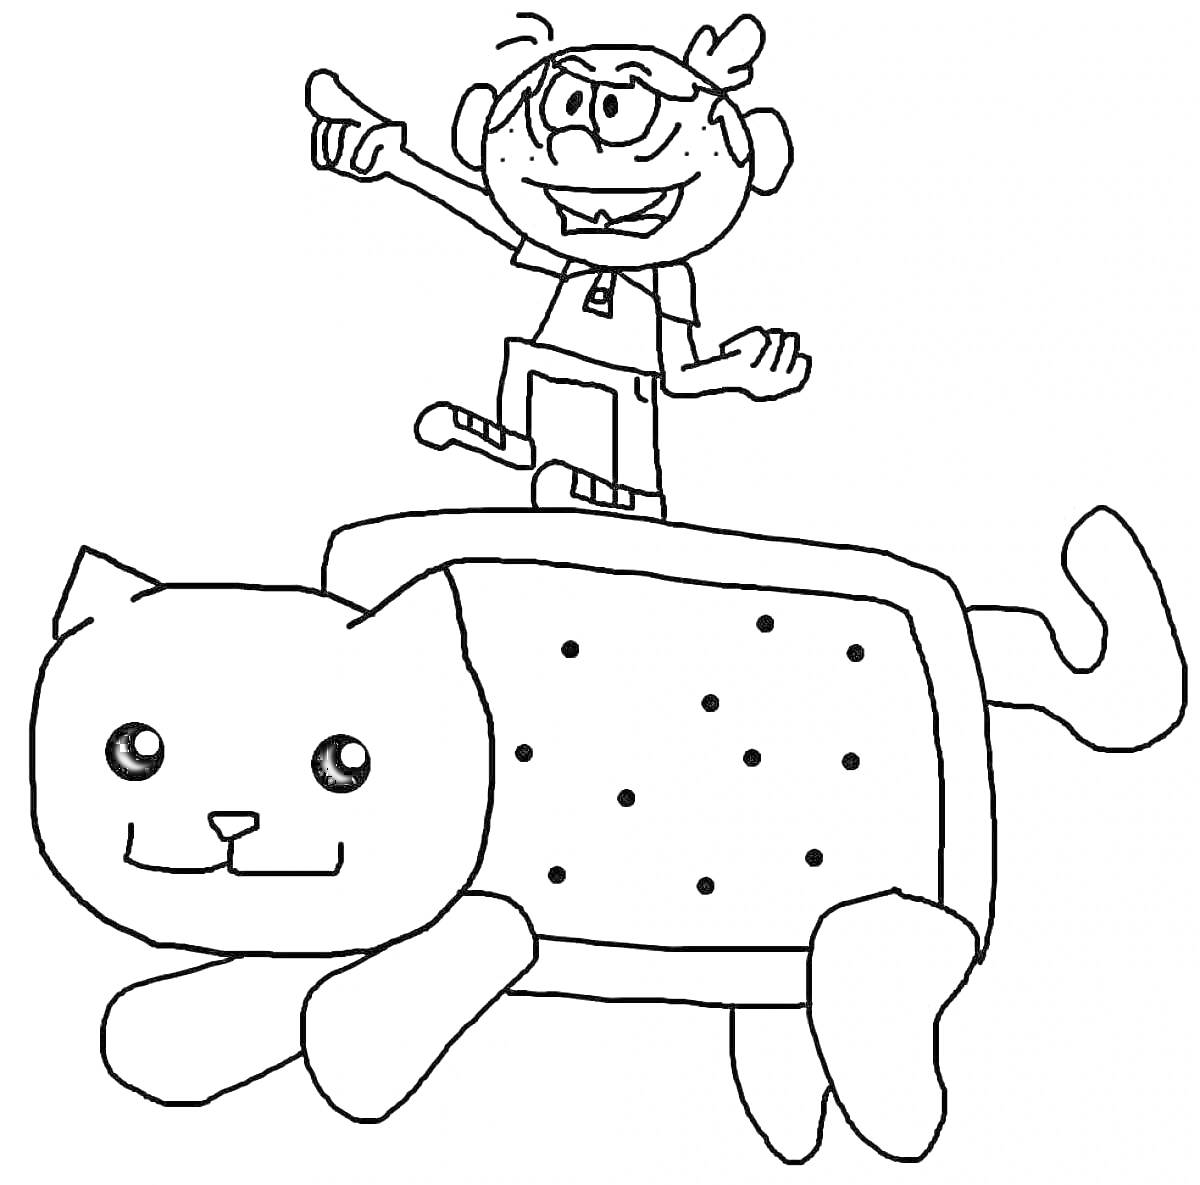 Раскраска Человек на спине картонного кота